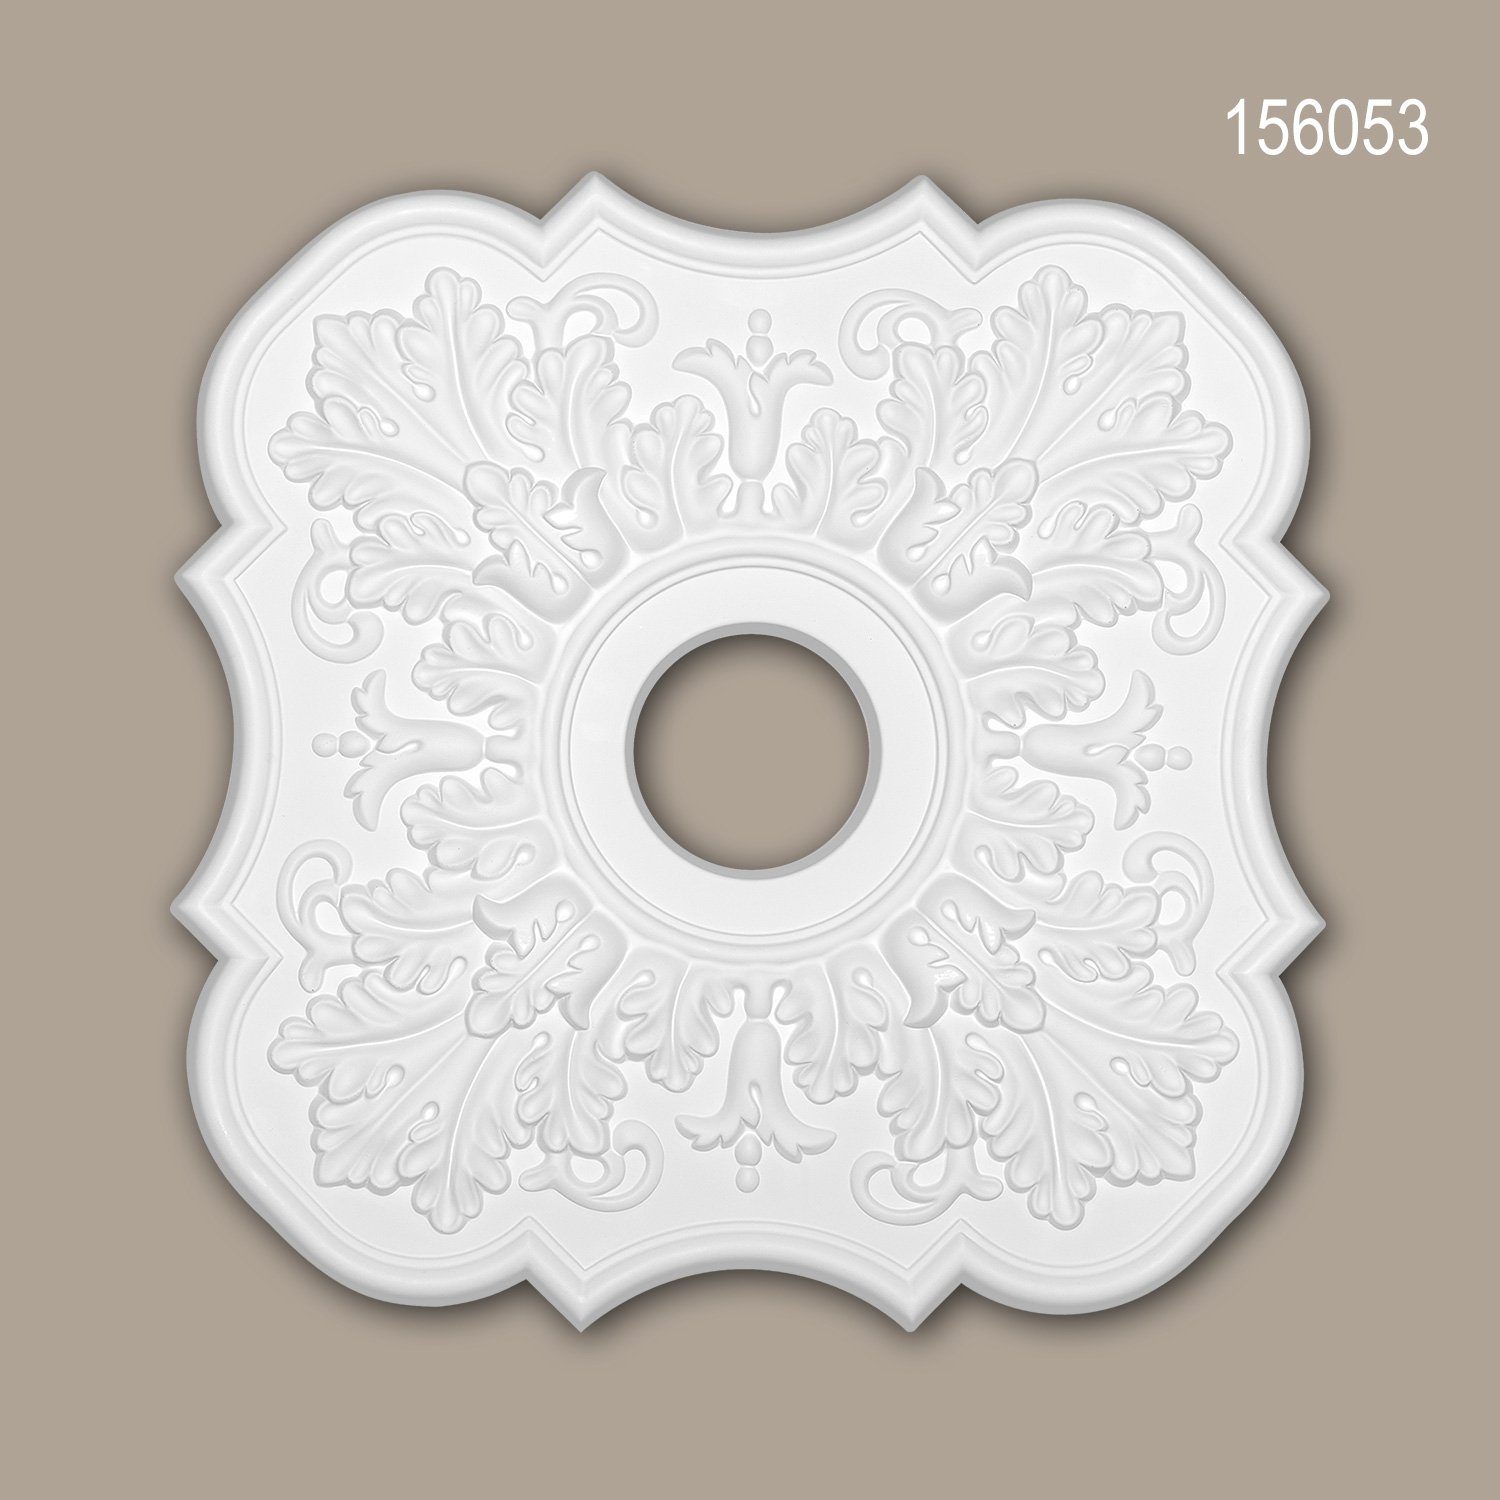 Profhome Decken-Rosette 156053 (Rosette, 1 St., Deckenrosette, Medallion, Stuckrosette, Deckenelement, Zierelement, 52,2 x 52,2 cm), weiß, vorgrundiert, Stil: Neo-Klassizismus